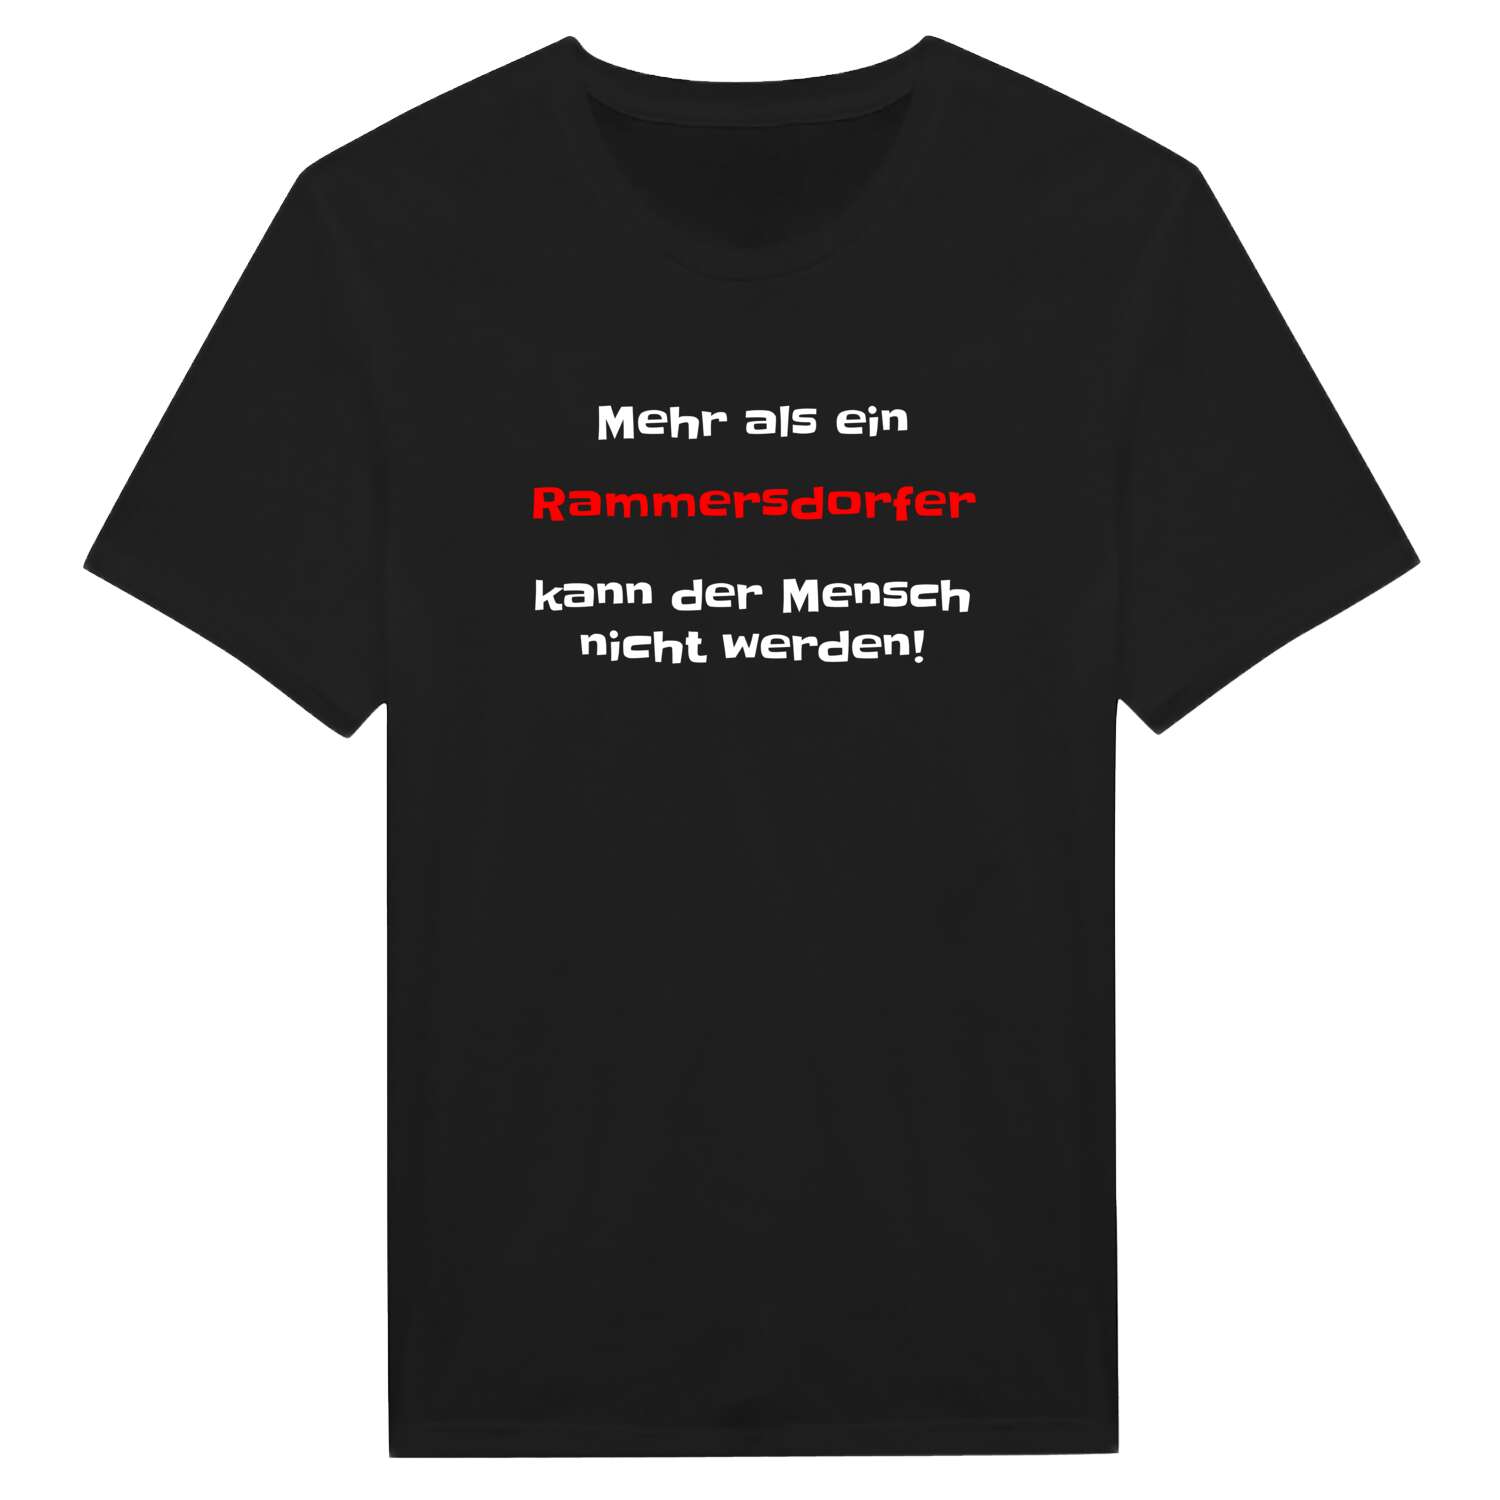 Rammersdorf T-Shirt »Mehr als ein«